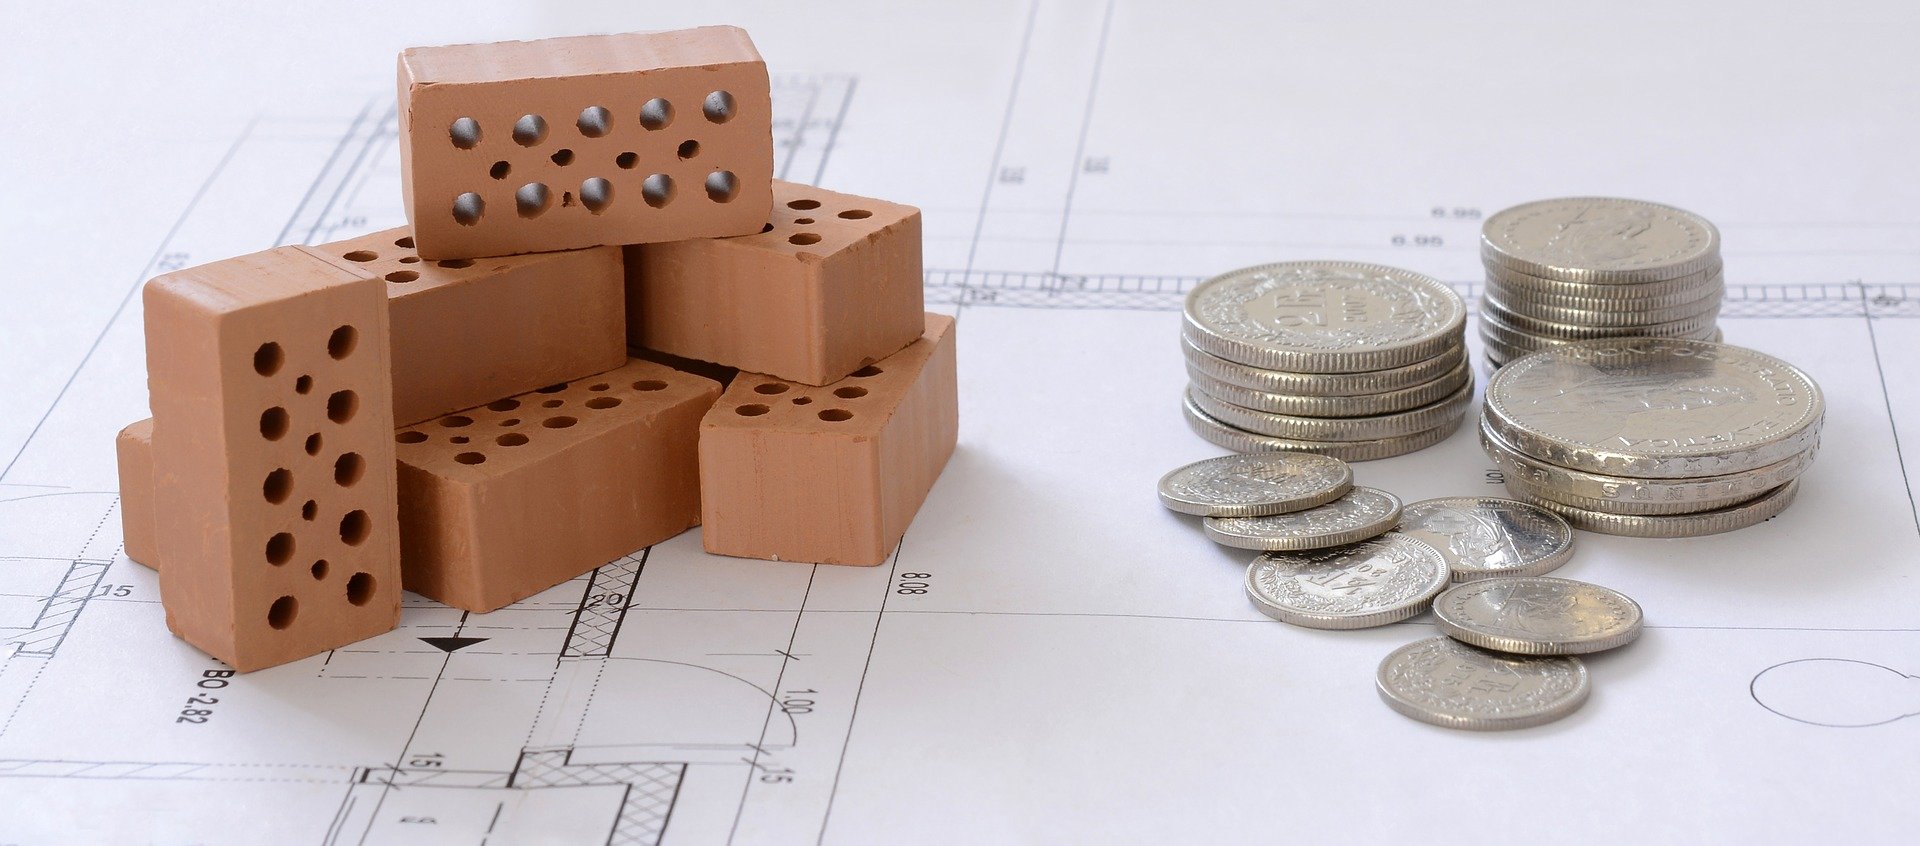 Baufinanzierung (Bauplan, Bauklötze und Euro-Münzen)